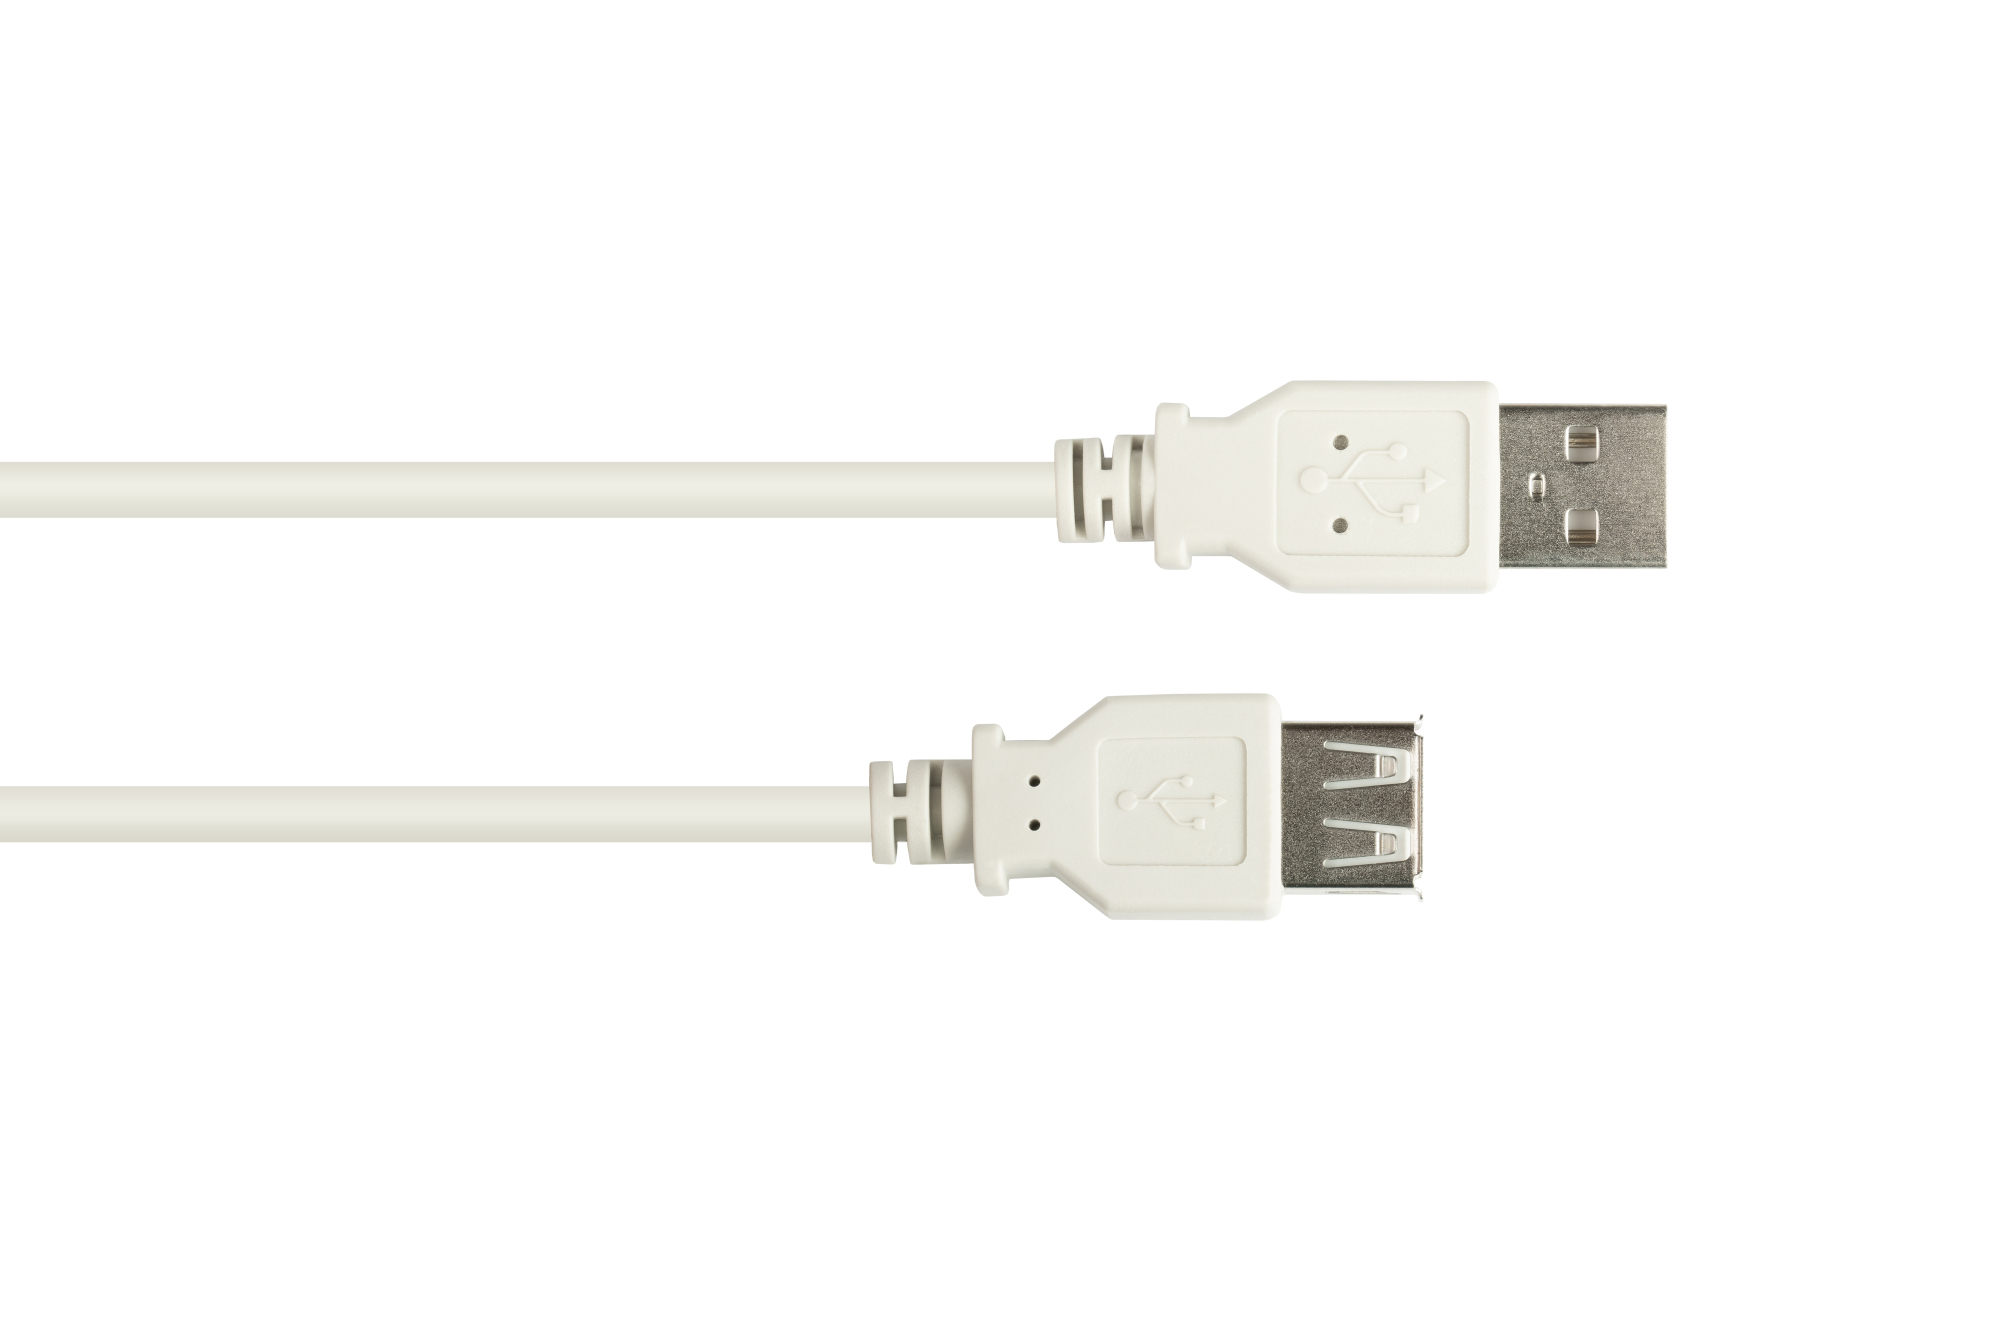 Verlängerungskabel USB 2.0 Stecker A an Buchse A, grau, 5m, Good Connections®